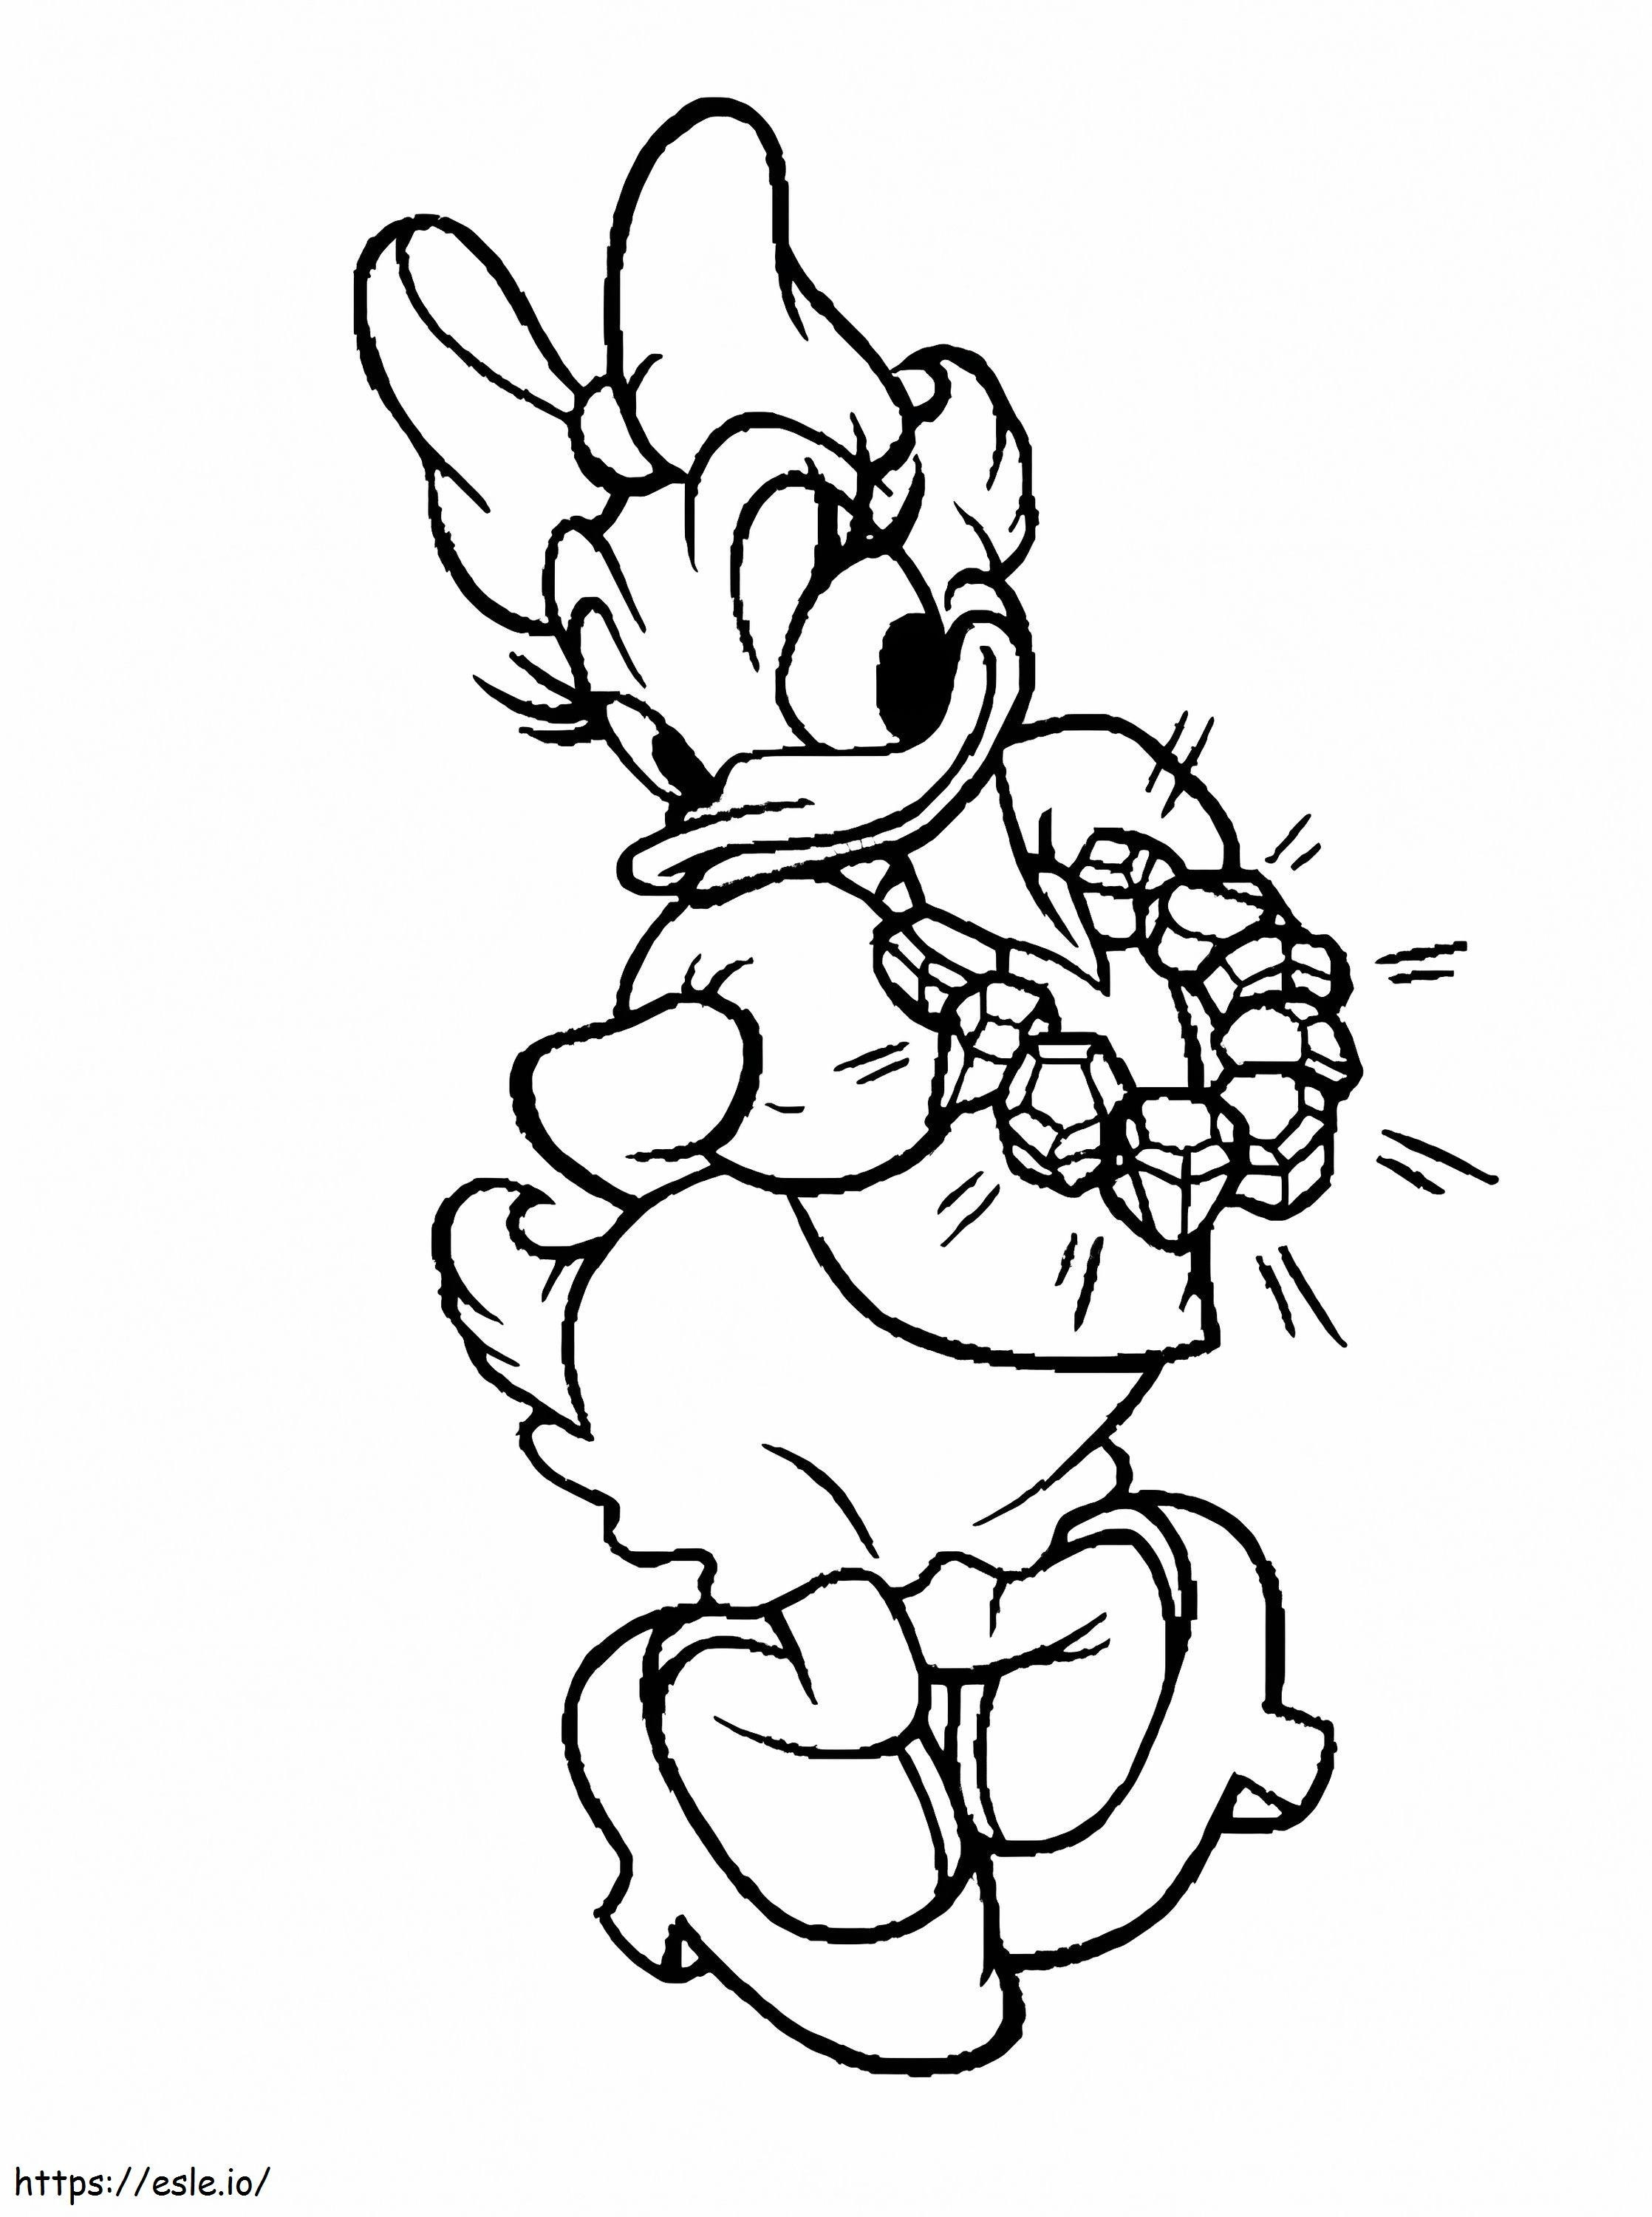 Daisy Duck és a csillogó gyémánt nyaklánca kifestő